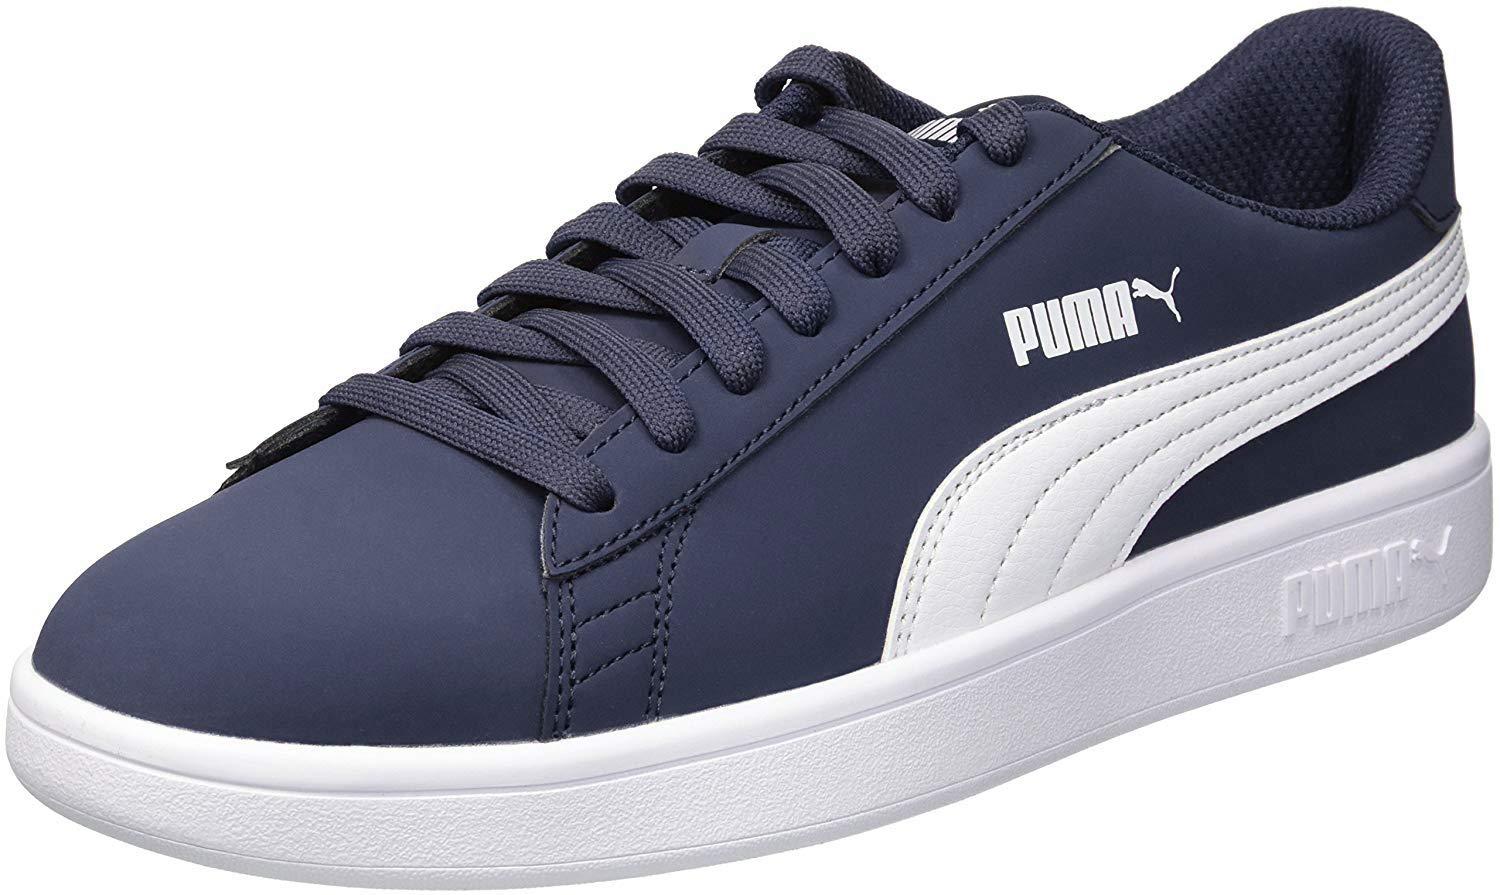 PUMA Suede Smash V2 Sneaker in Navy (Blue) for Men - Save 40% - Lyst